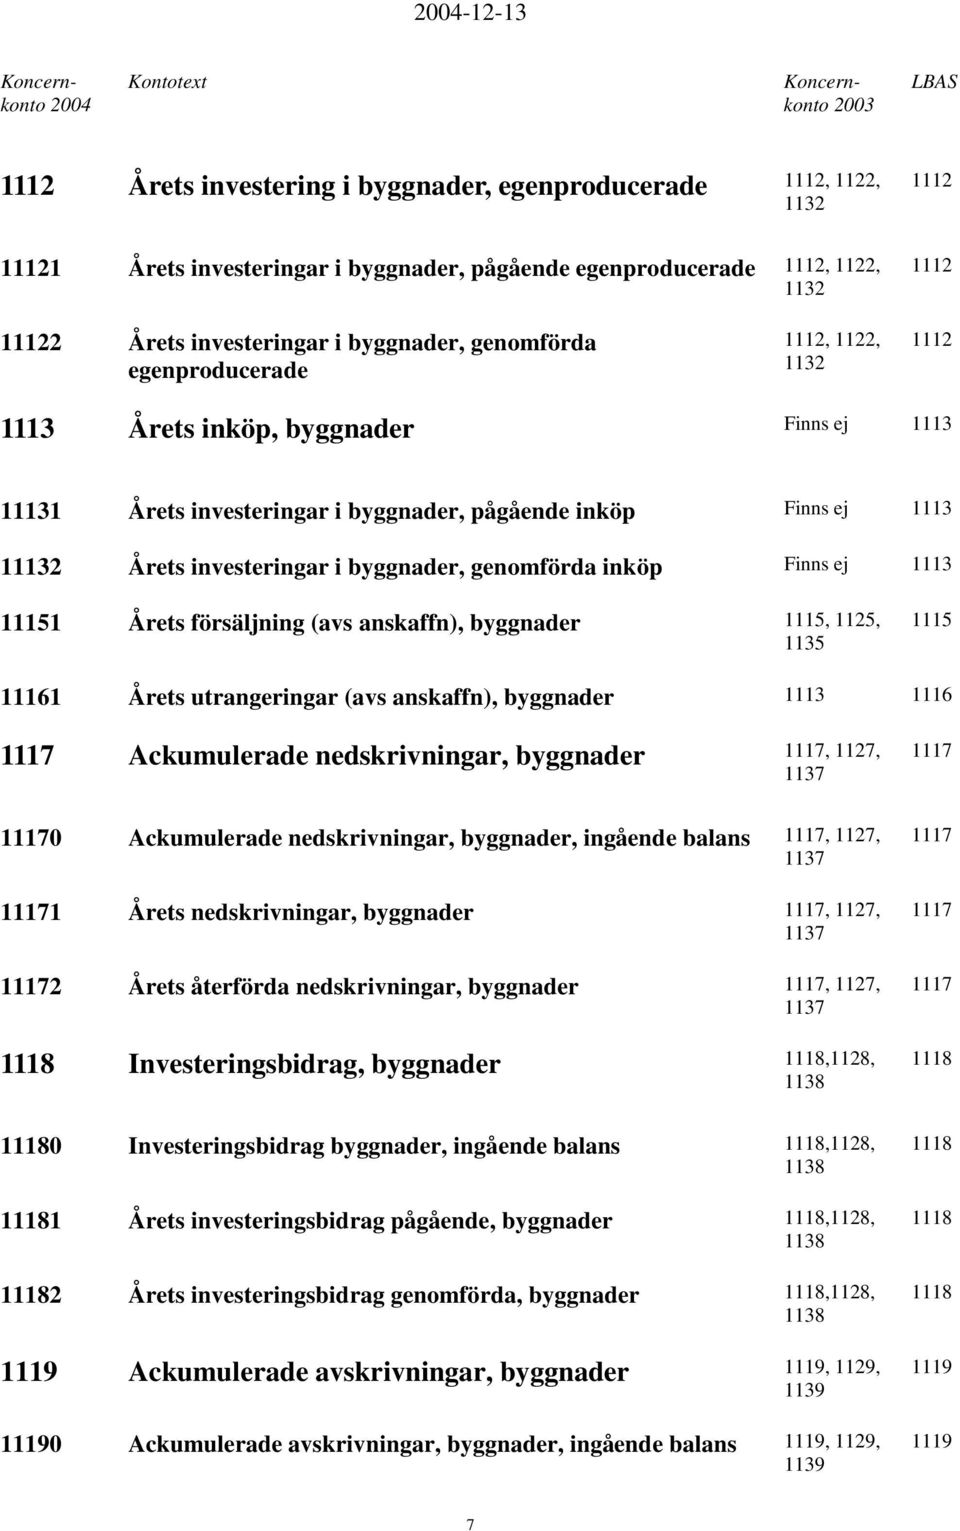 genomförda inköp Finns ej 1113 11151 Årets försäljning (avs anskaffn), byggnader 1115, 1125, 1135 1115 11161 Årets utrangeringar (avs anskaffn), byggnader 1113 1116 1117 Ackumulerade nedskrivningar,